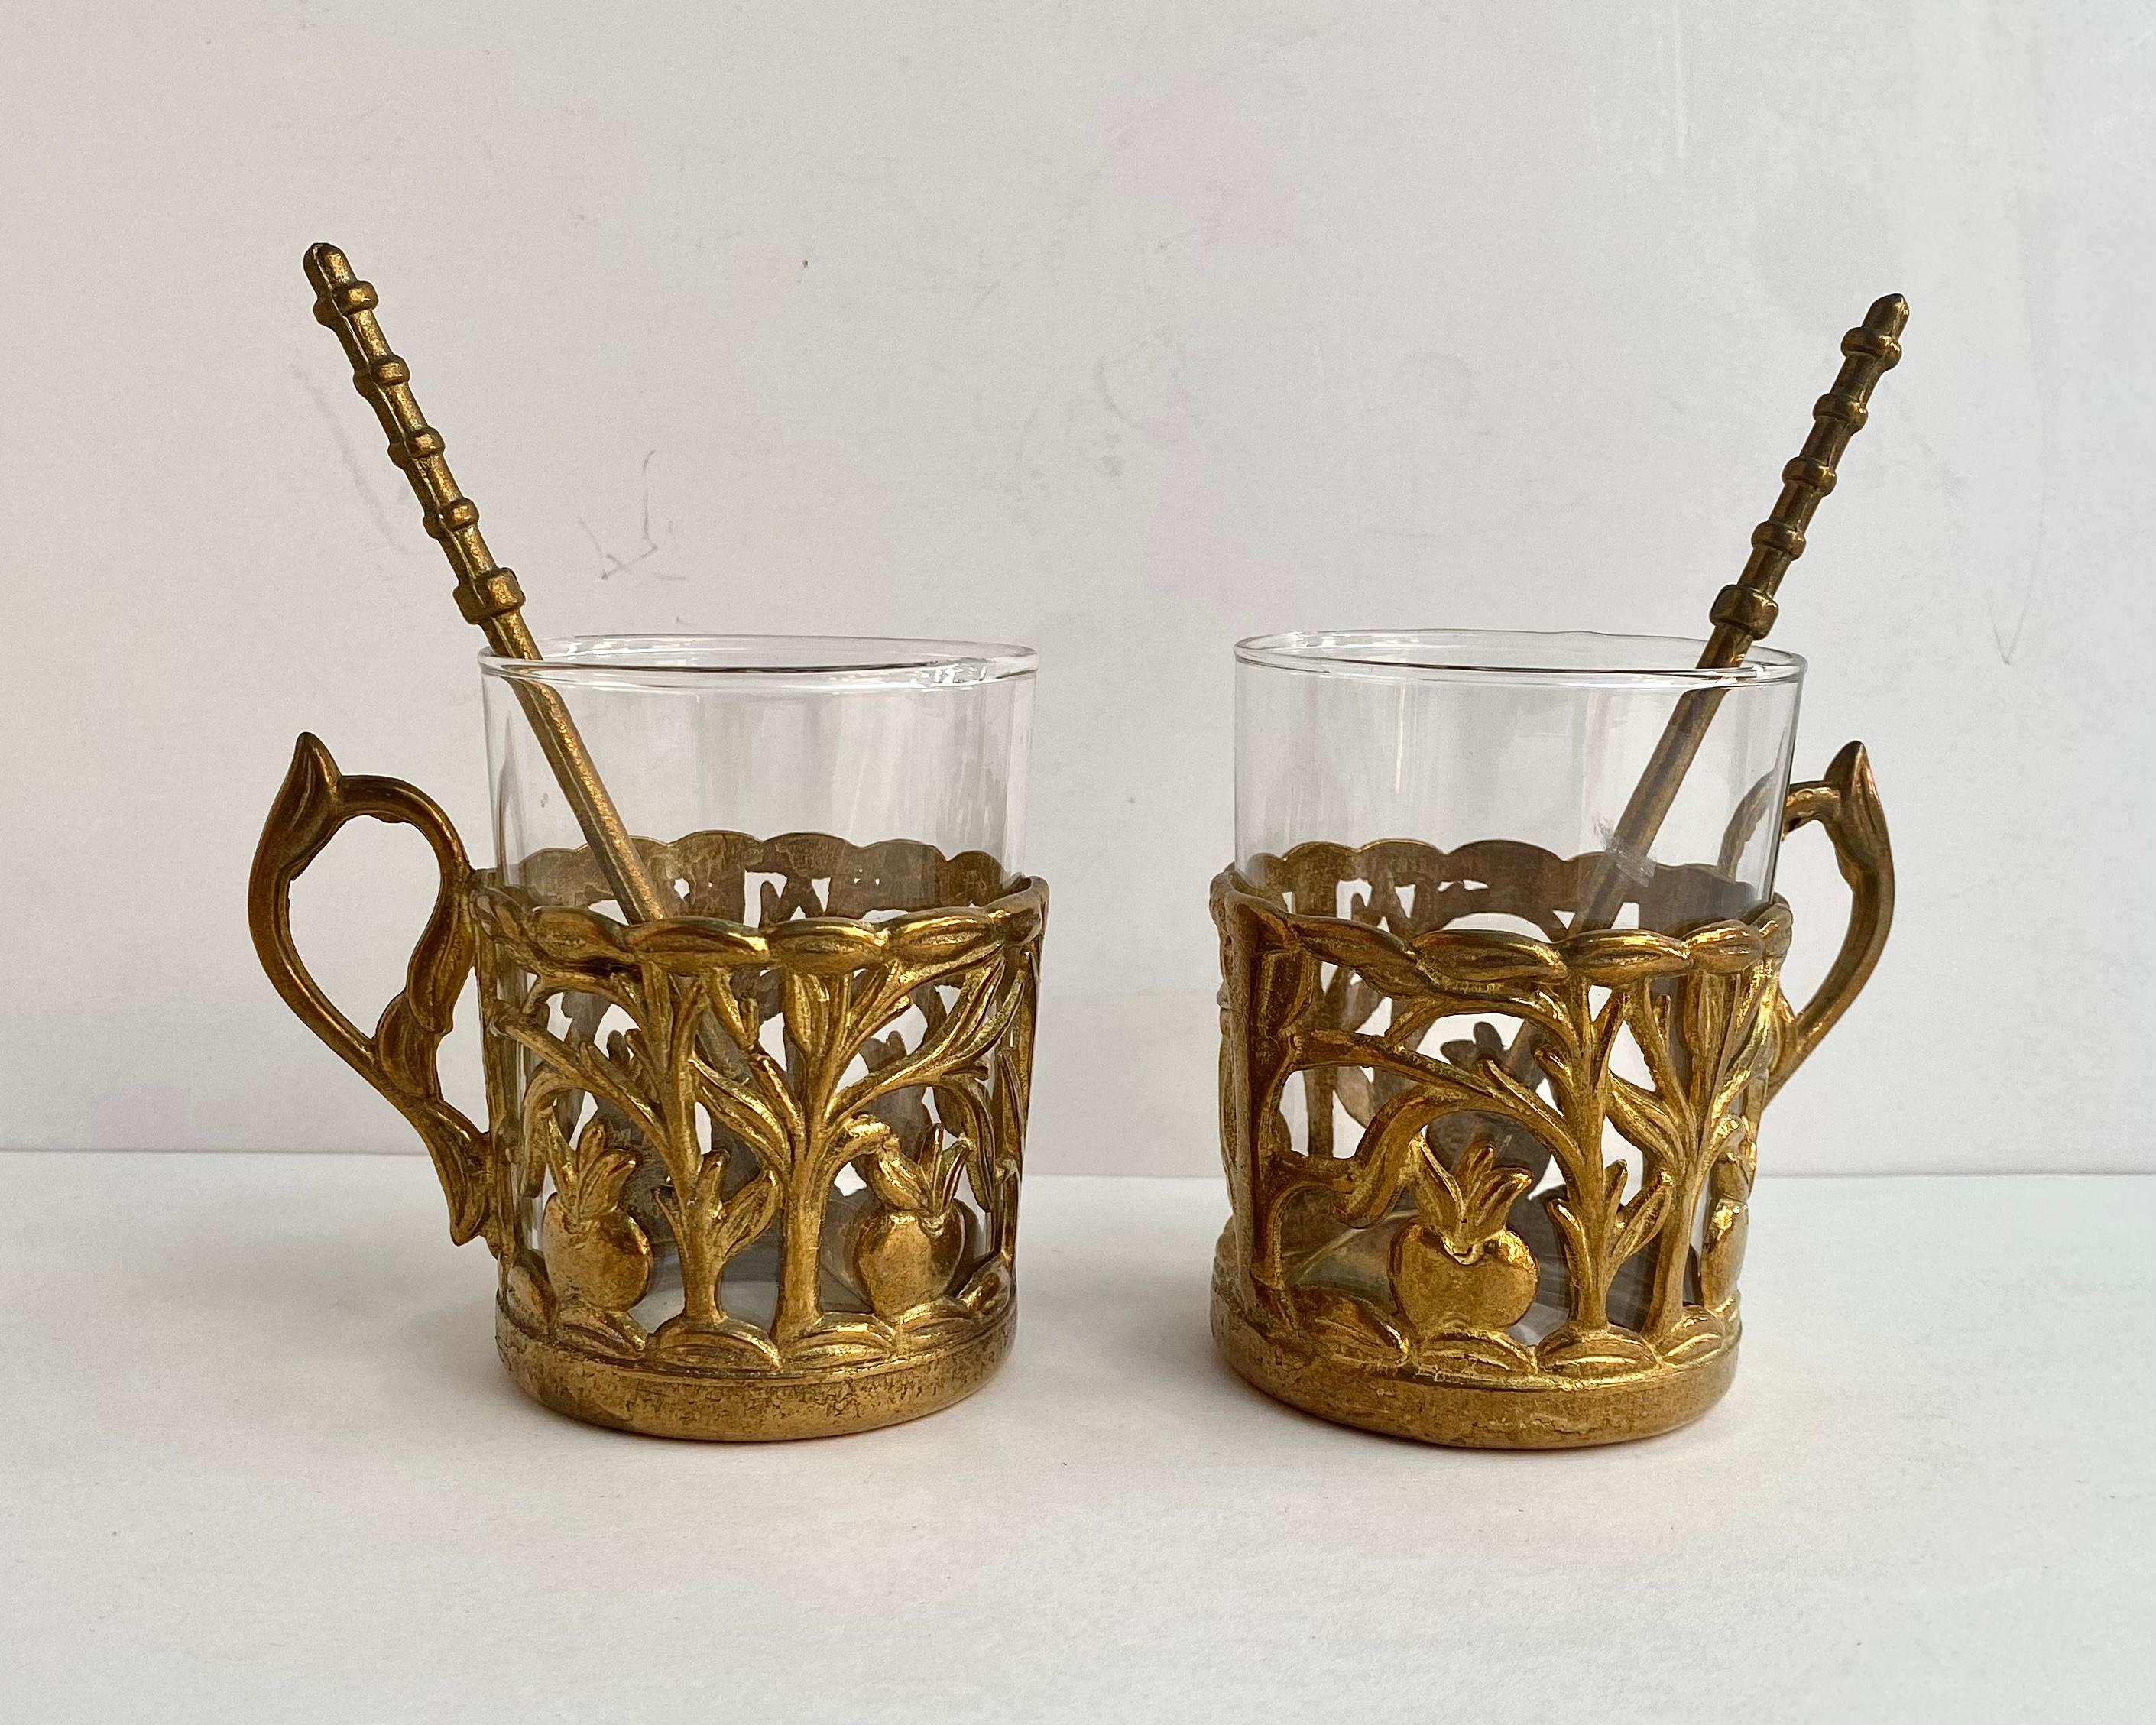 L'ensemble original d'ustensiles anciens pour le thé se compose de 2 tasses à thé en verre, de porte-verres en laiton et de cuillères.

Fabriqué en France.

Faites-vous plaisir ou faites plaisir à vos proches avec de la belle vaisselle